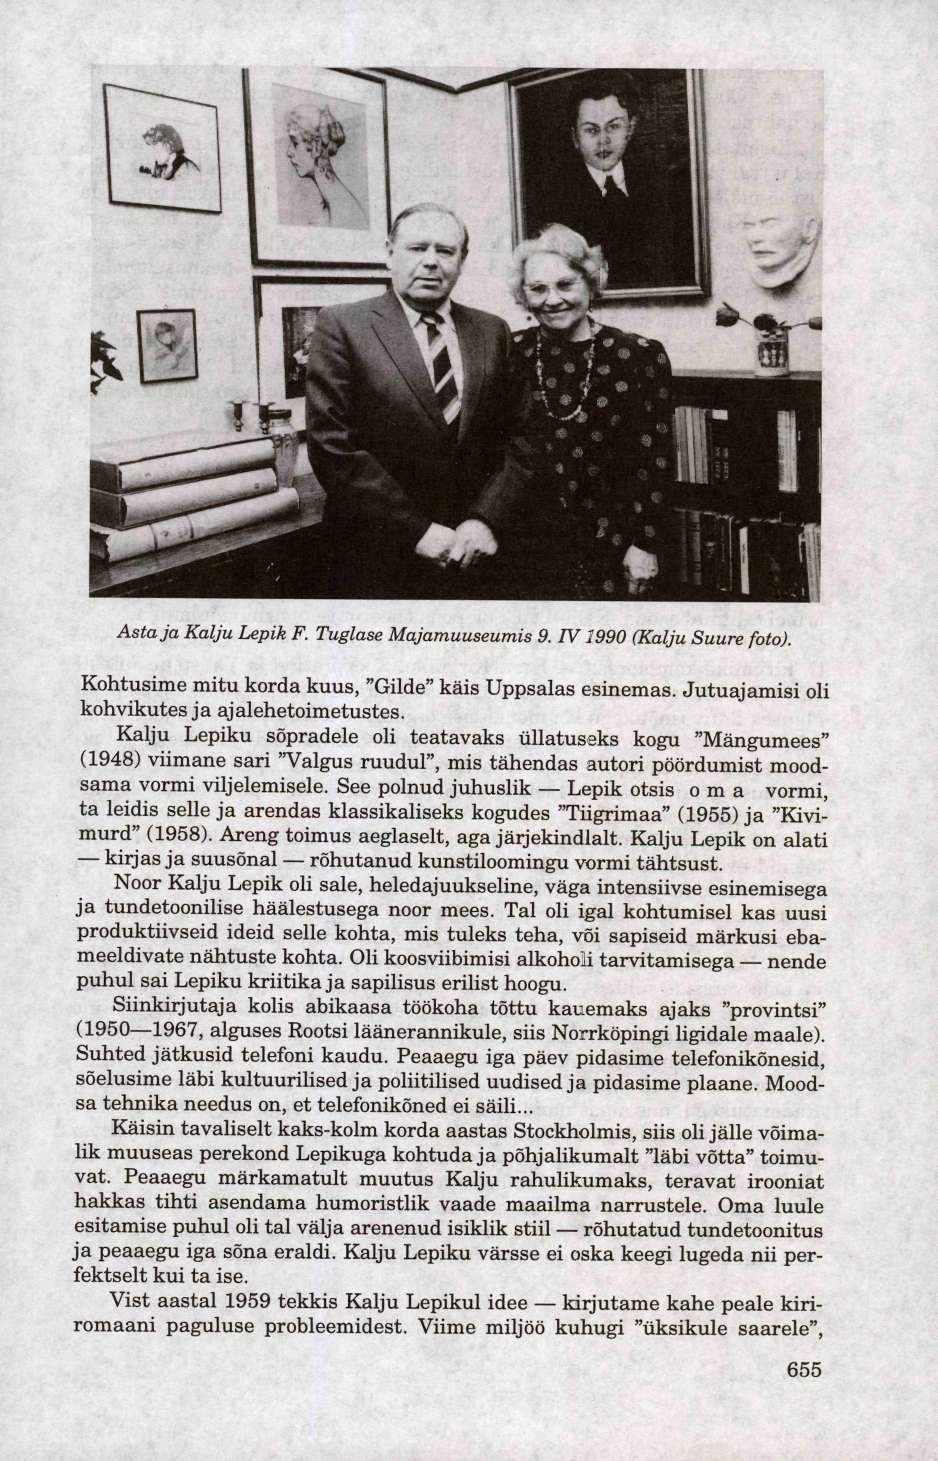 Asta ja Kalju Lepik F. Tuglase Majamuuseumis 9. IV1990 (Kalju Suure foto). Kohtusime mitu korda kuus, "Gilde" käis Uppsalas esinemas. Jutuajamisi oli kohvikutes ja ajalehetoimetustes.